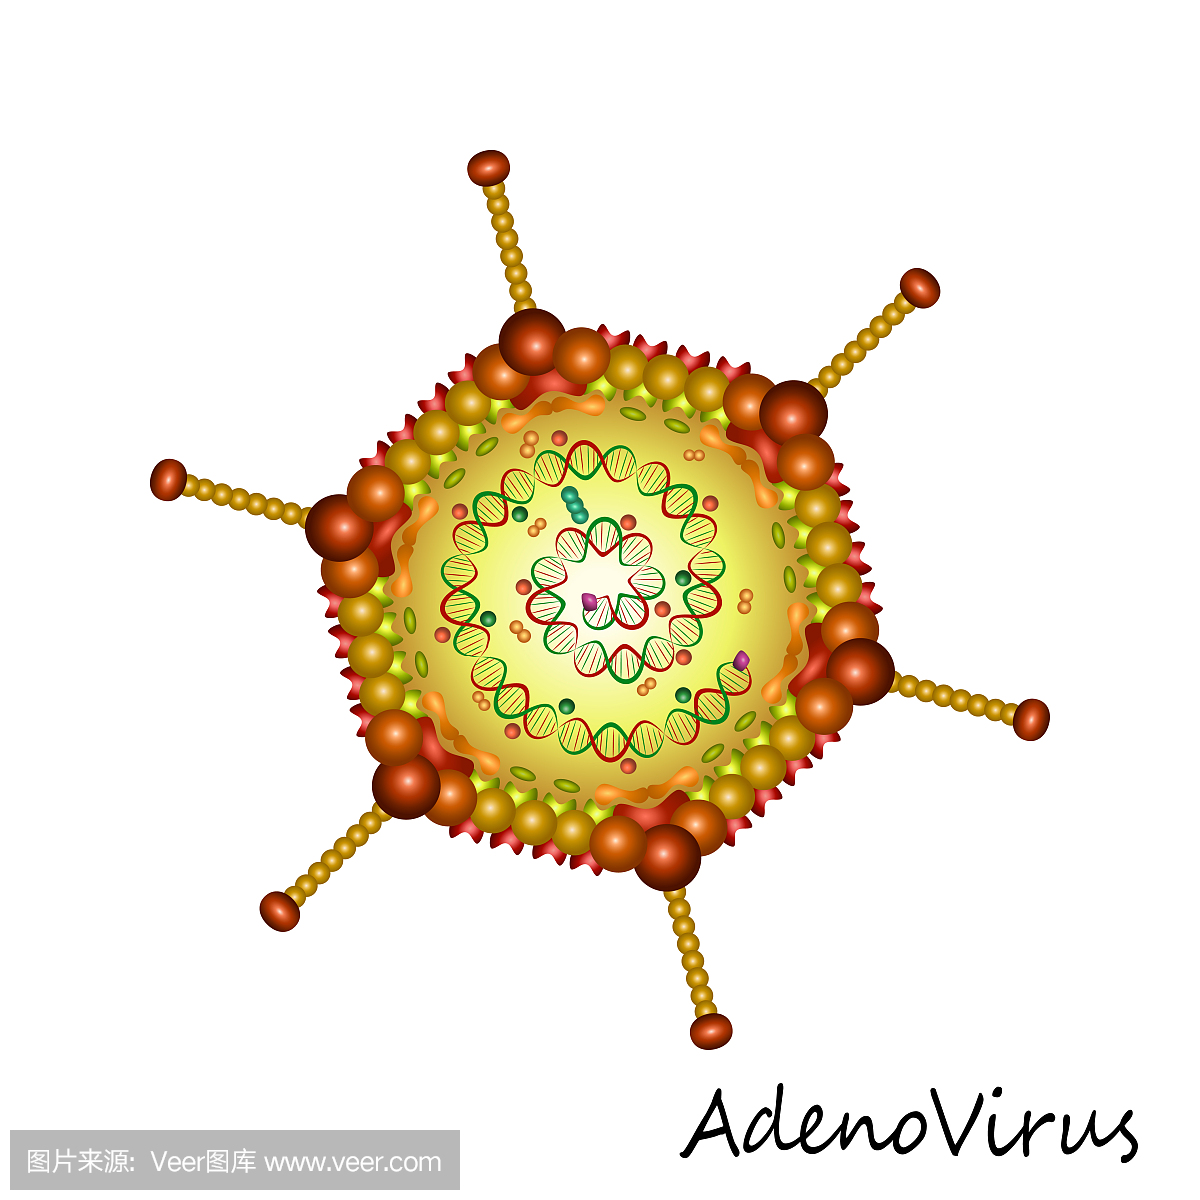 腺病毒的可怕之处就在于强传染性,虽然人人都有传染的可能,但腺病毒